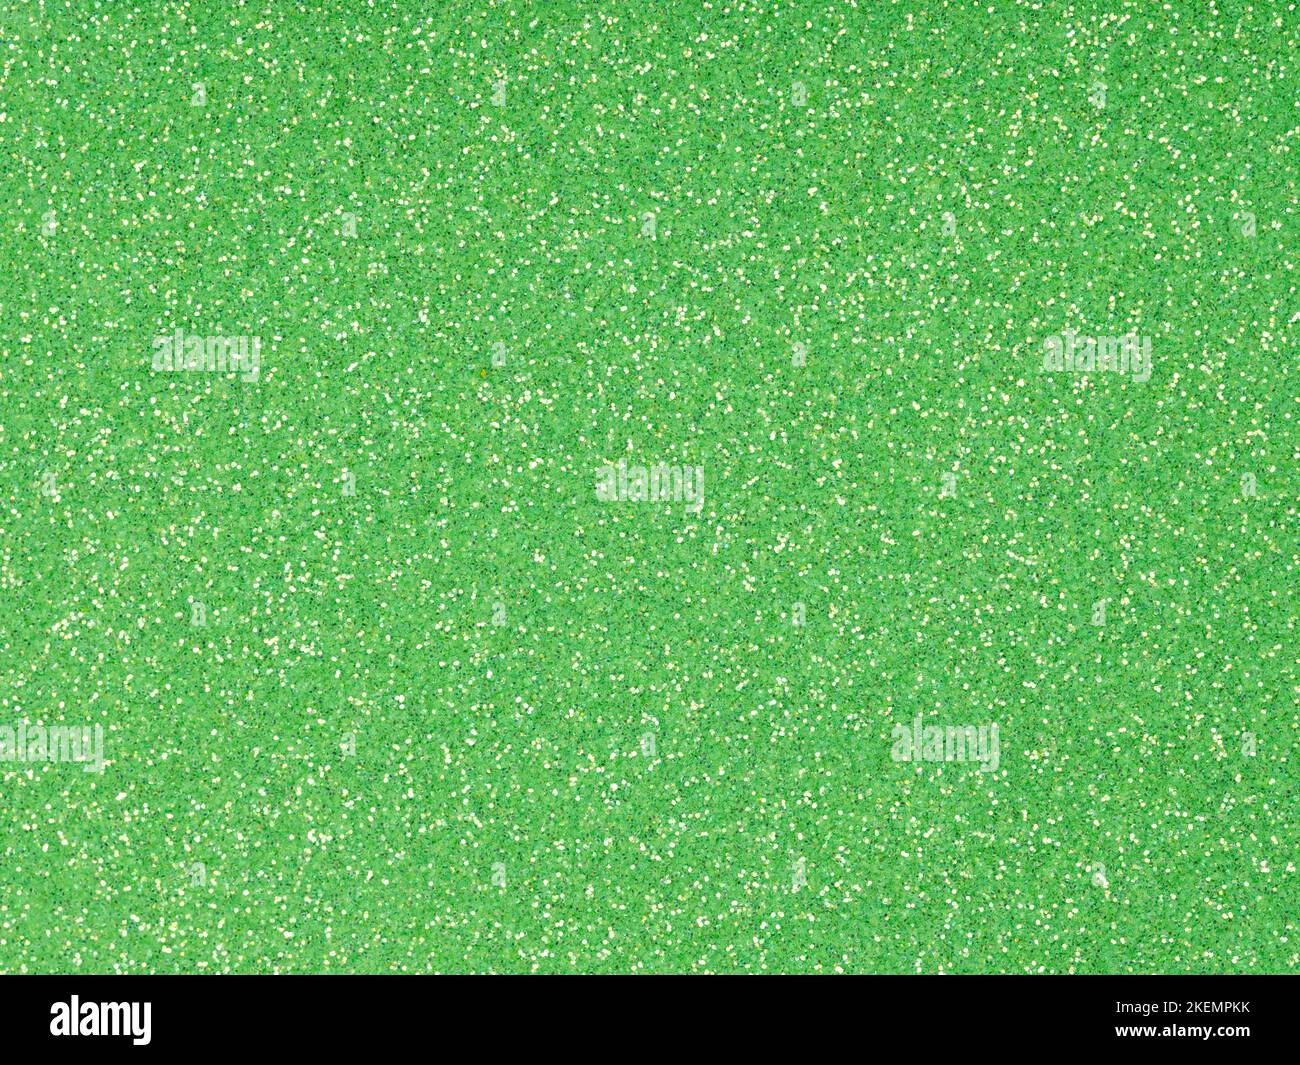 Festlicher, weicher grüner Hologramm-Glitzer. Leuchtend grüner Hintergrund für St. Patrick's Day, Weihnachten, Neujahr, Weihnachtsgeschenk oder andere Feiertage Stockfoto